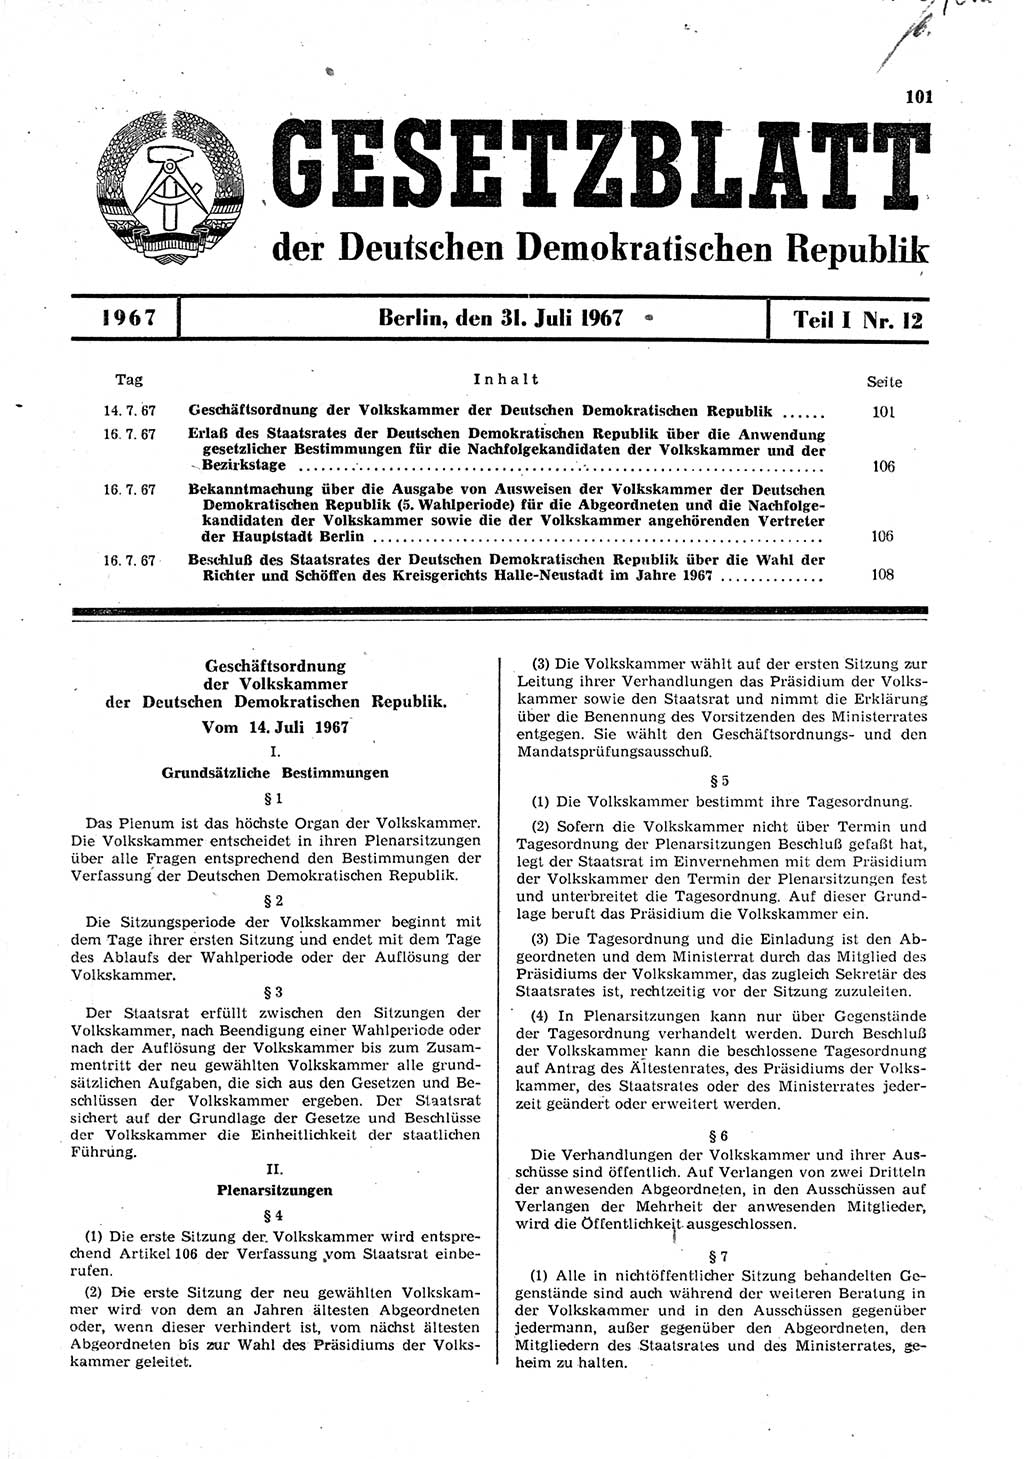 Gesetzblatt (GBl.) der Deutschen Demokratischen Republik (DDR) Teil Ⅰ 1967, Seite 101 (GBl. DDR Ⅰ 1967, S. 101)